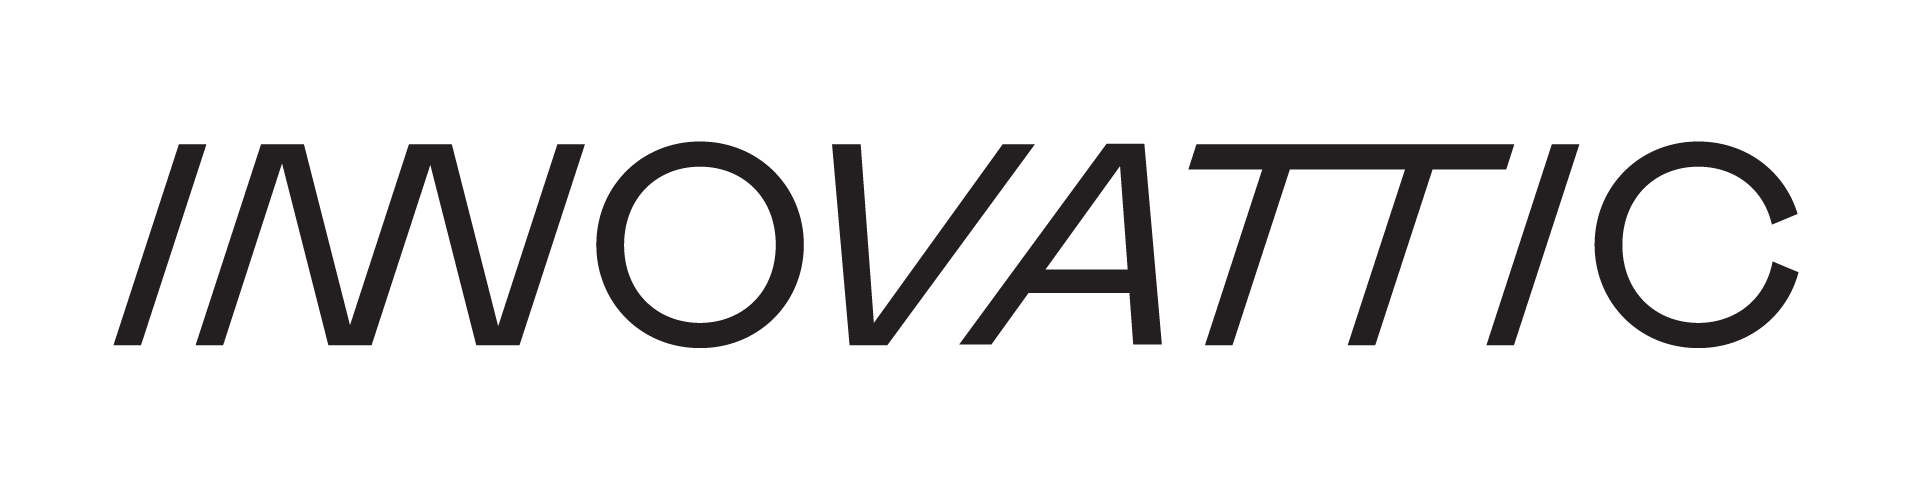 Innovattic logo